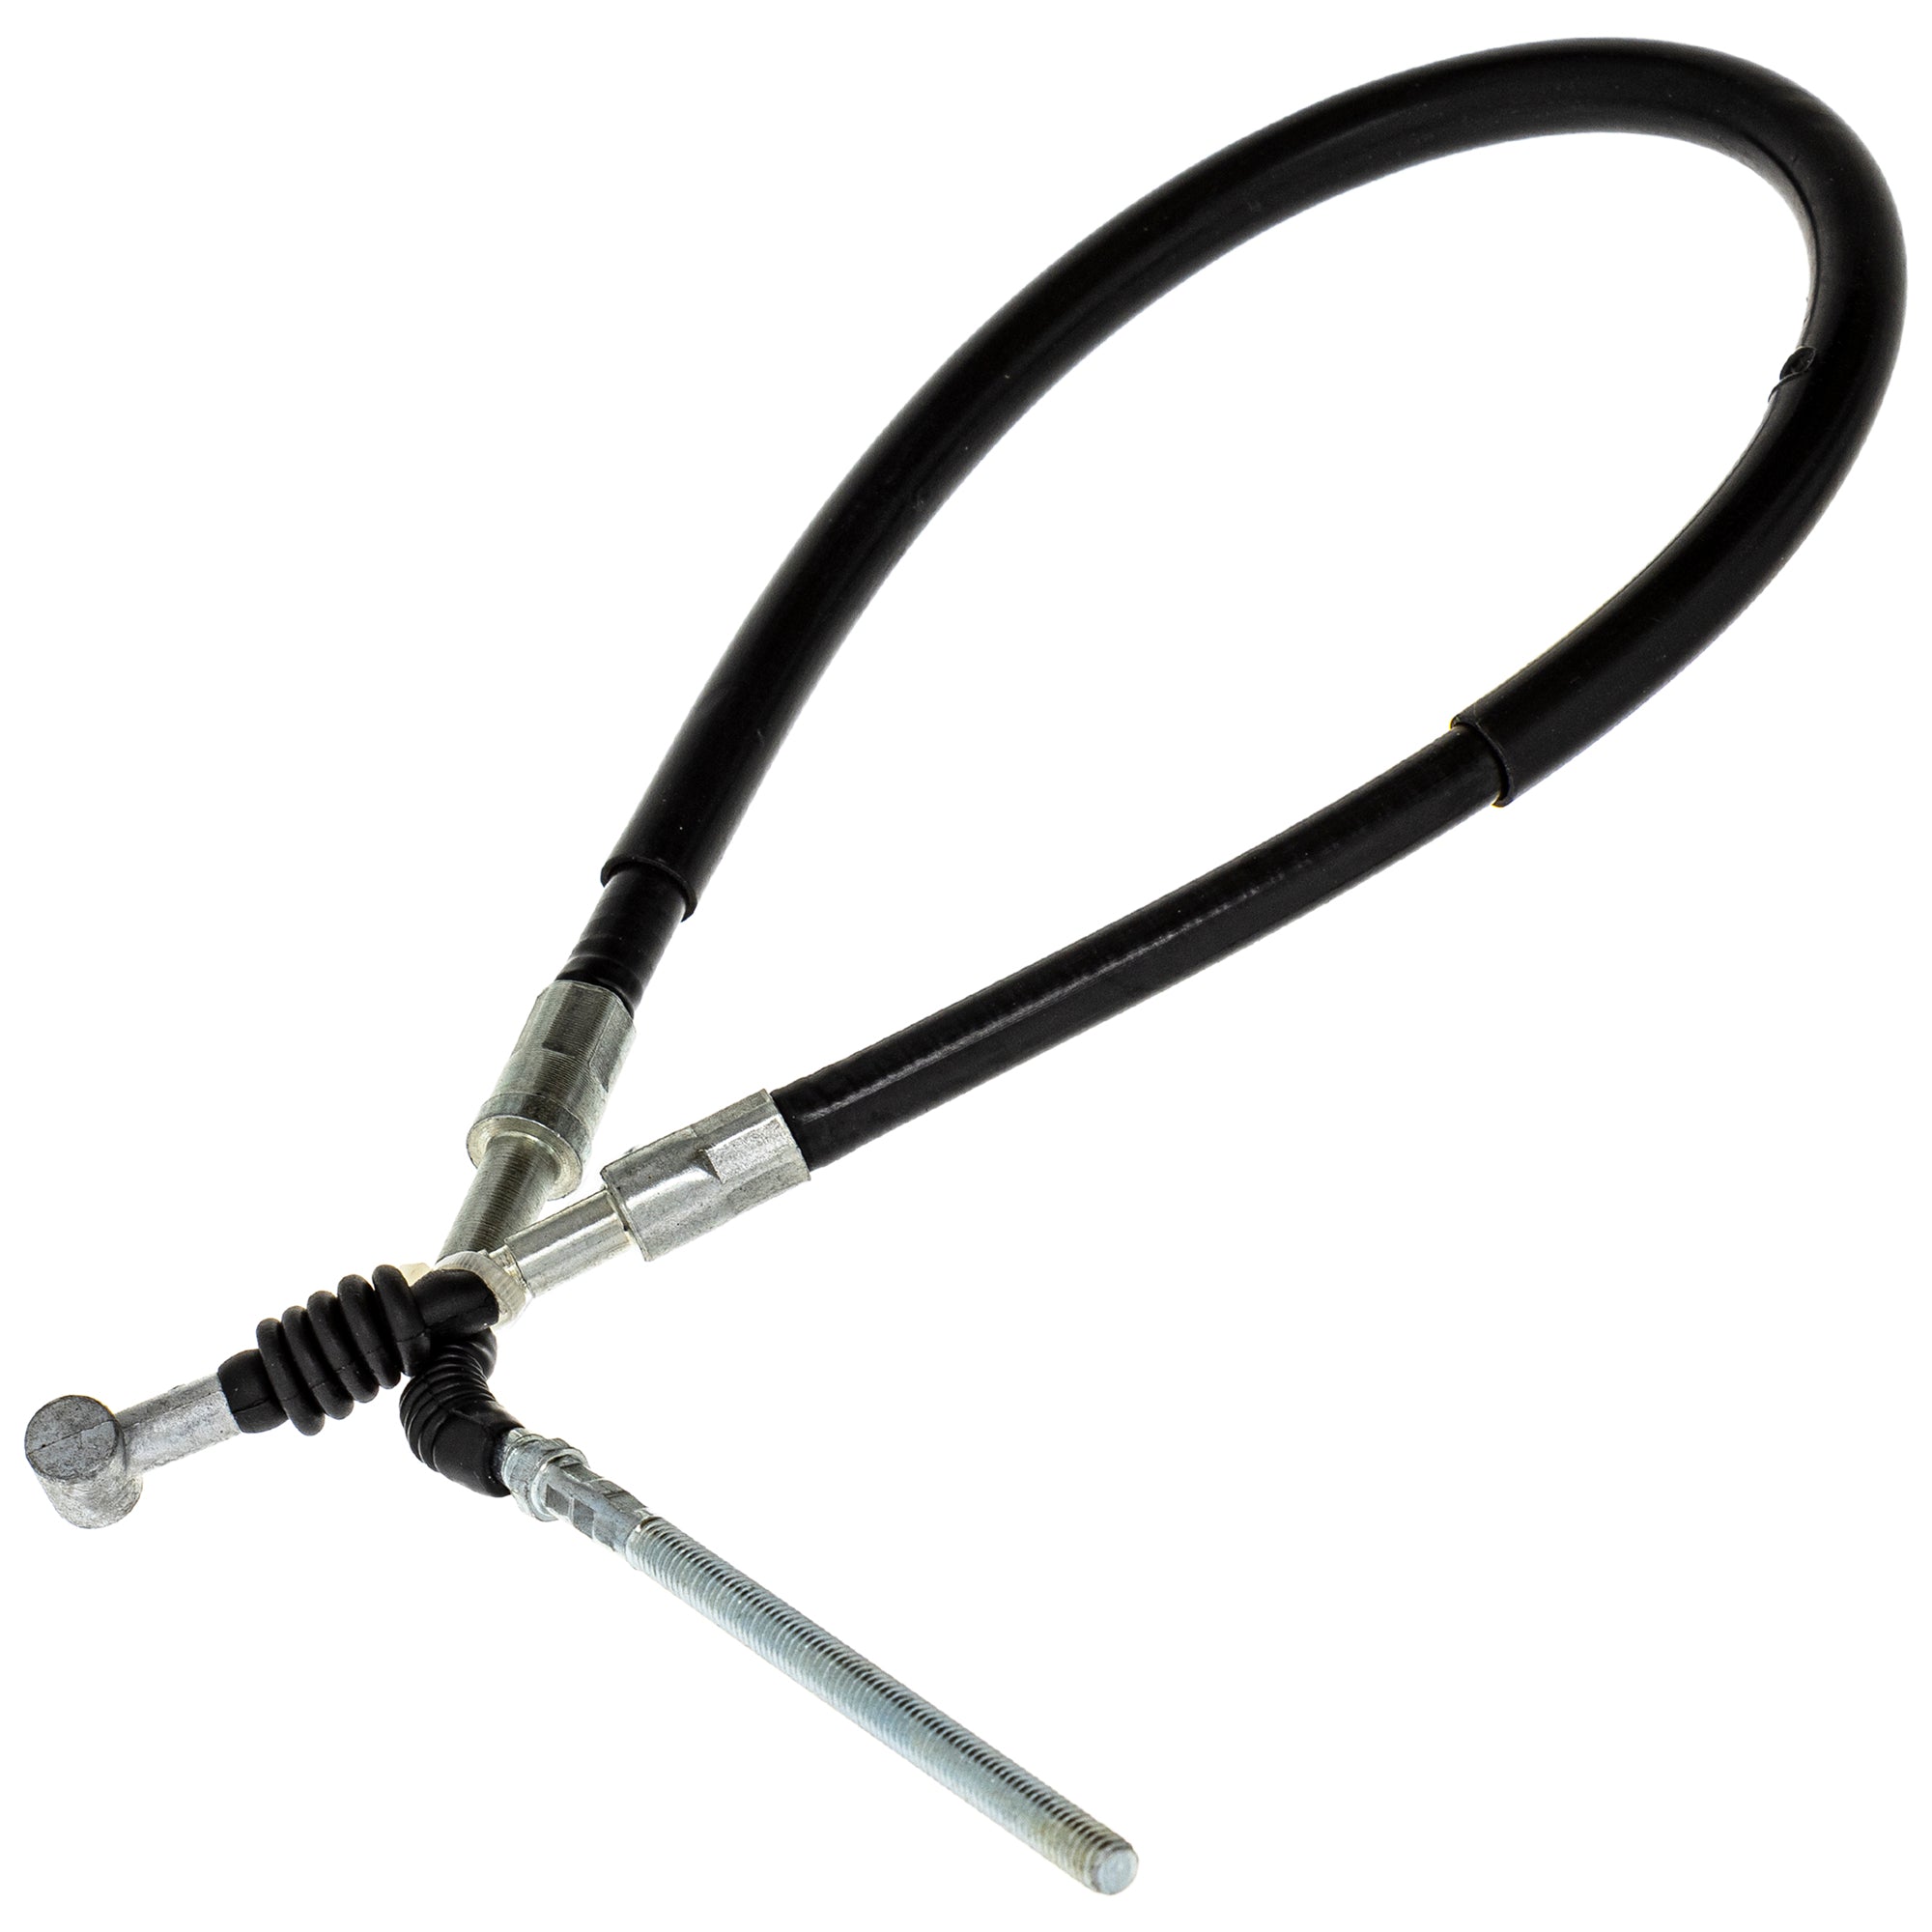 Foot Brake Cable for Honda ATC250ES TRX250 43470-HA6-000 43470-HA8-770